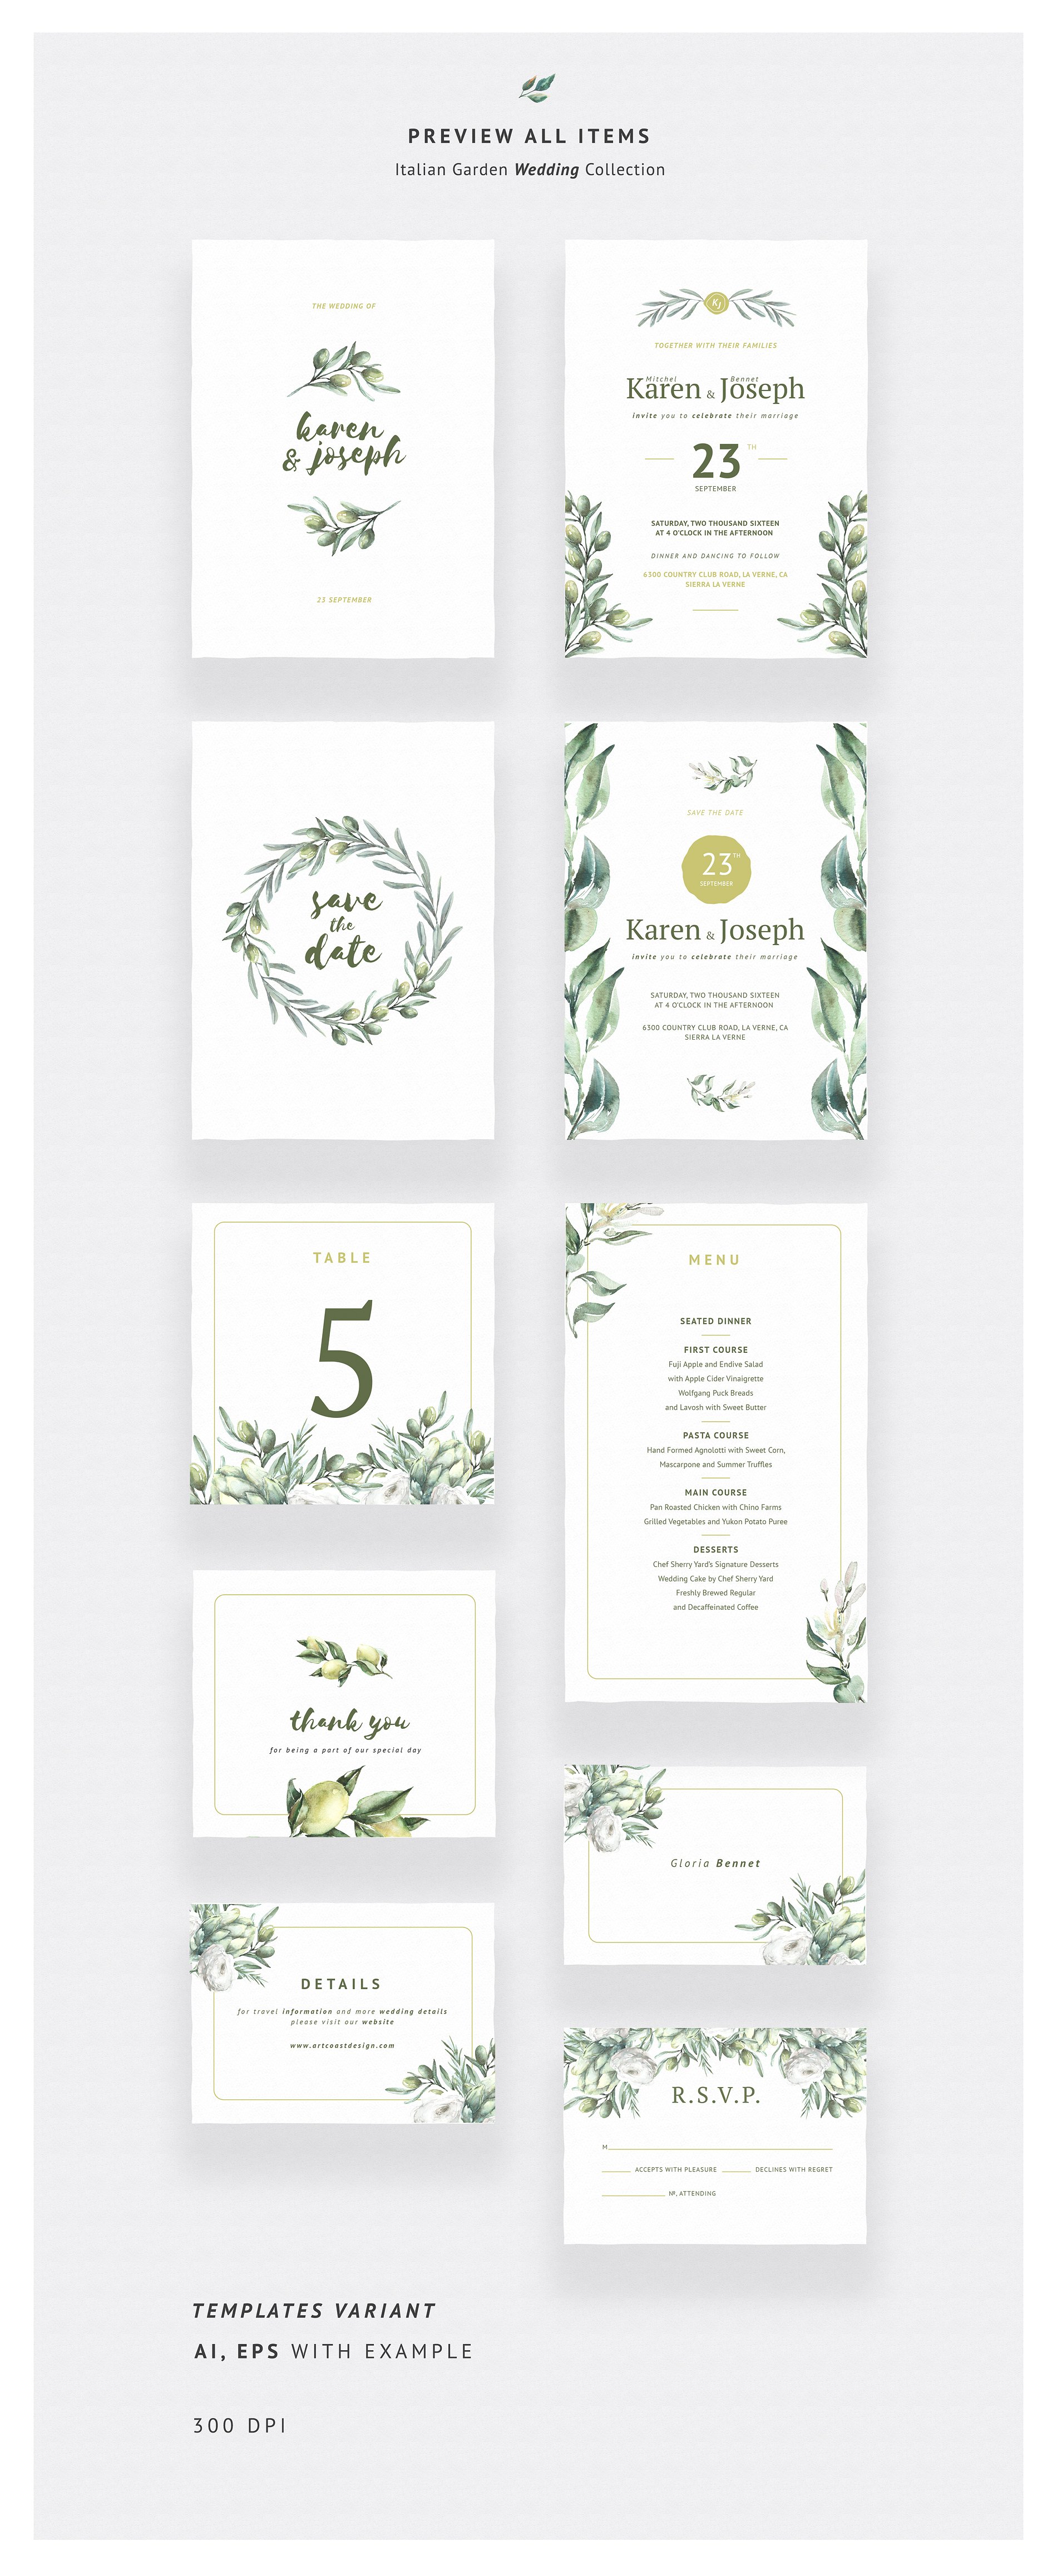 意大利橄榄枝花园婚礼系列贺卡设计素材 Italian Olive Branch Garden Wedding Collection插图2